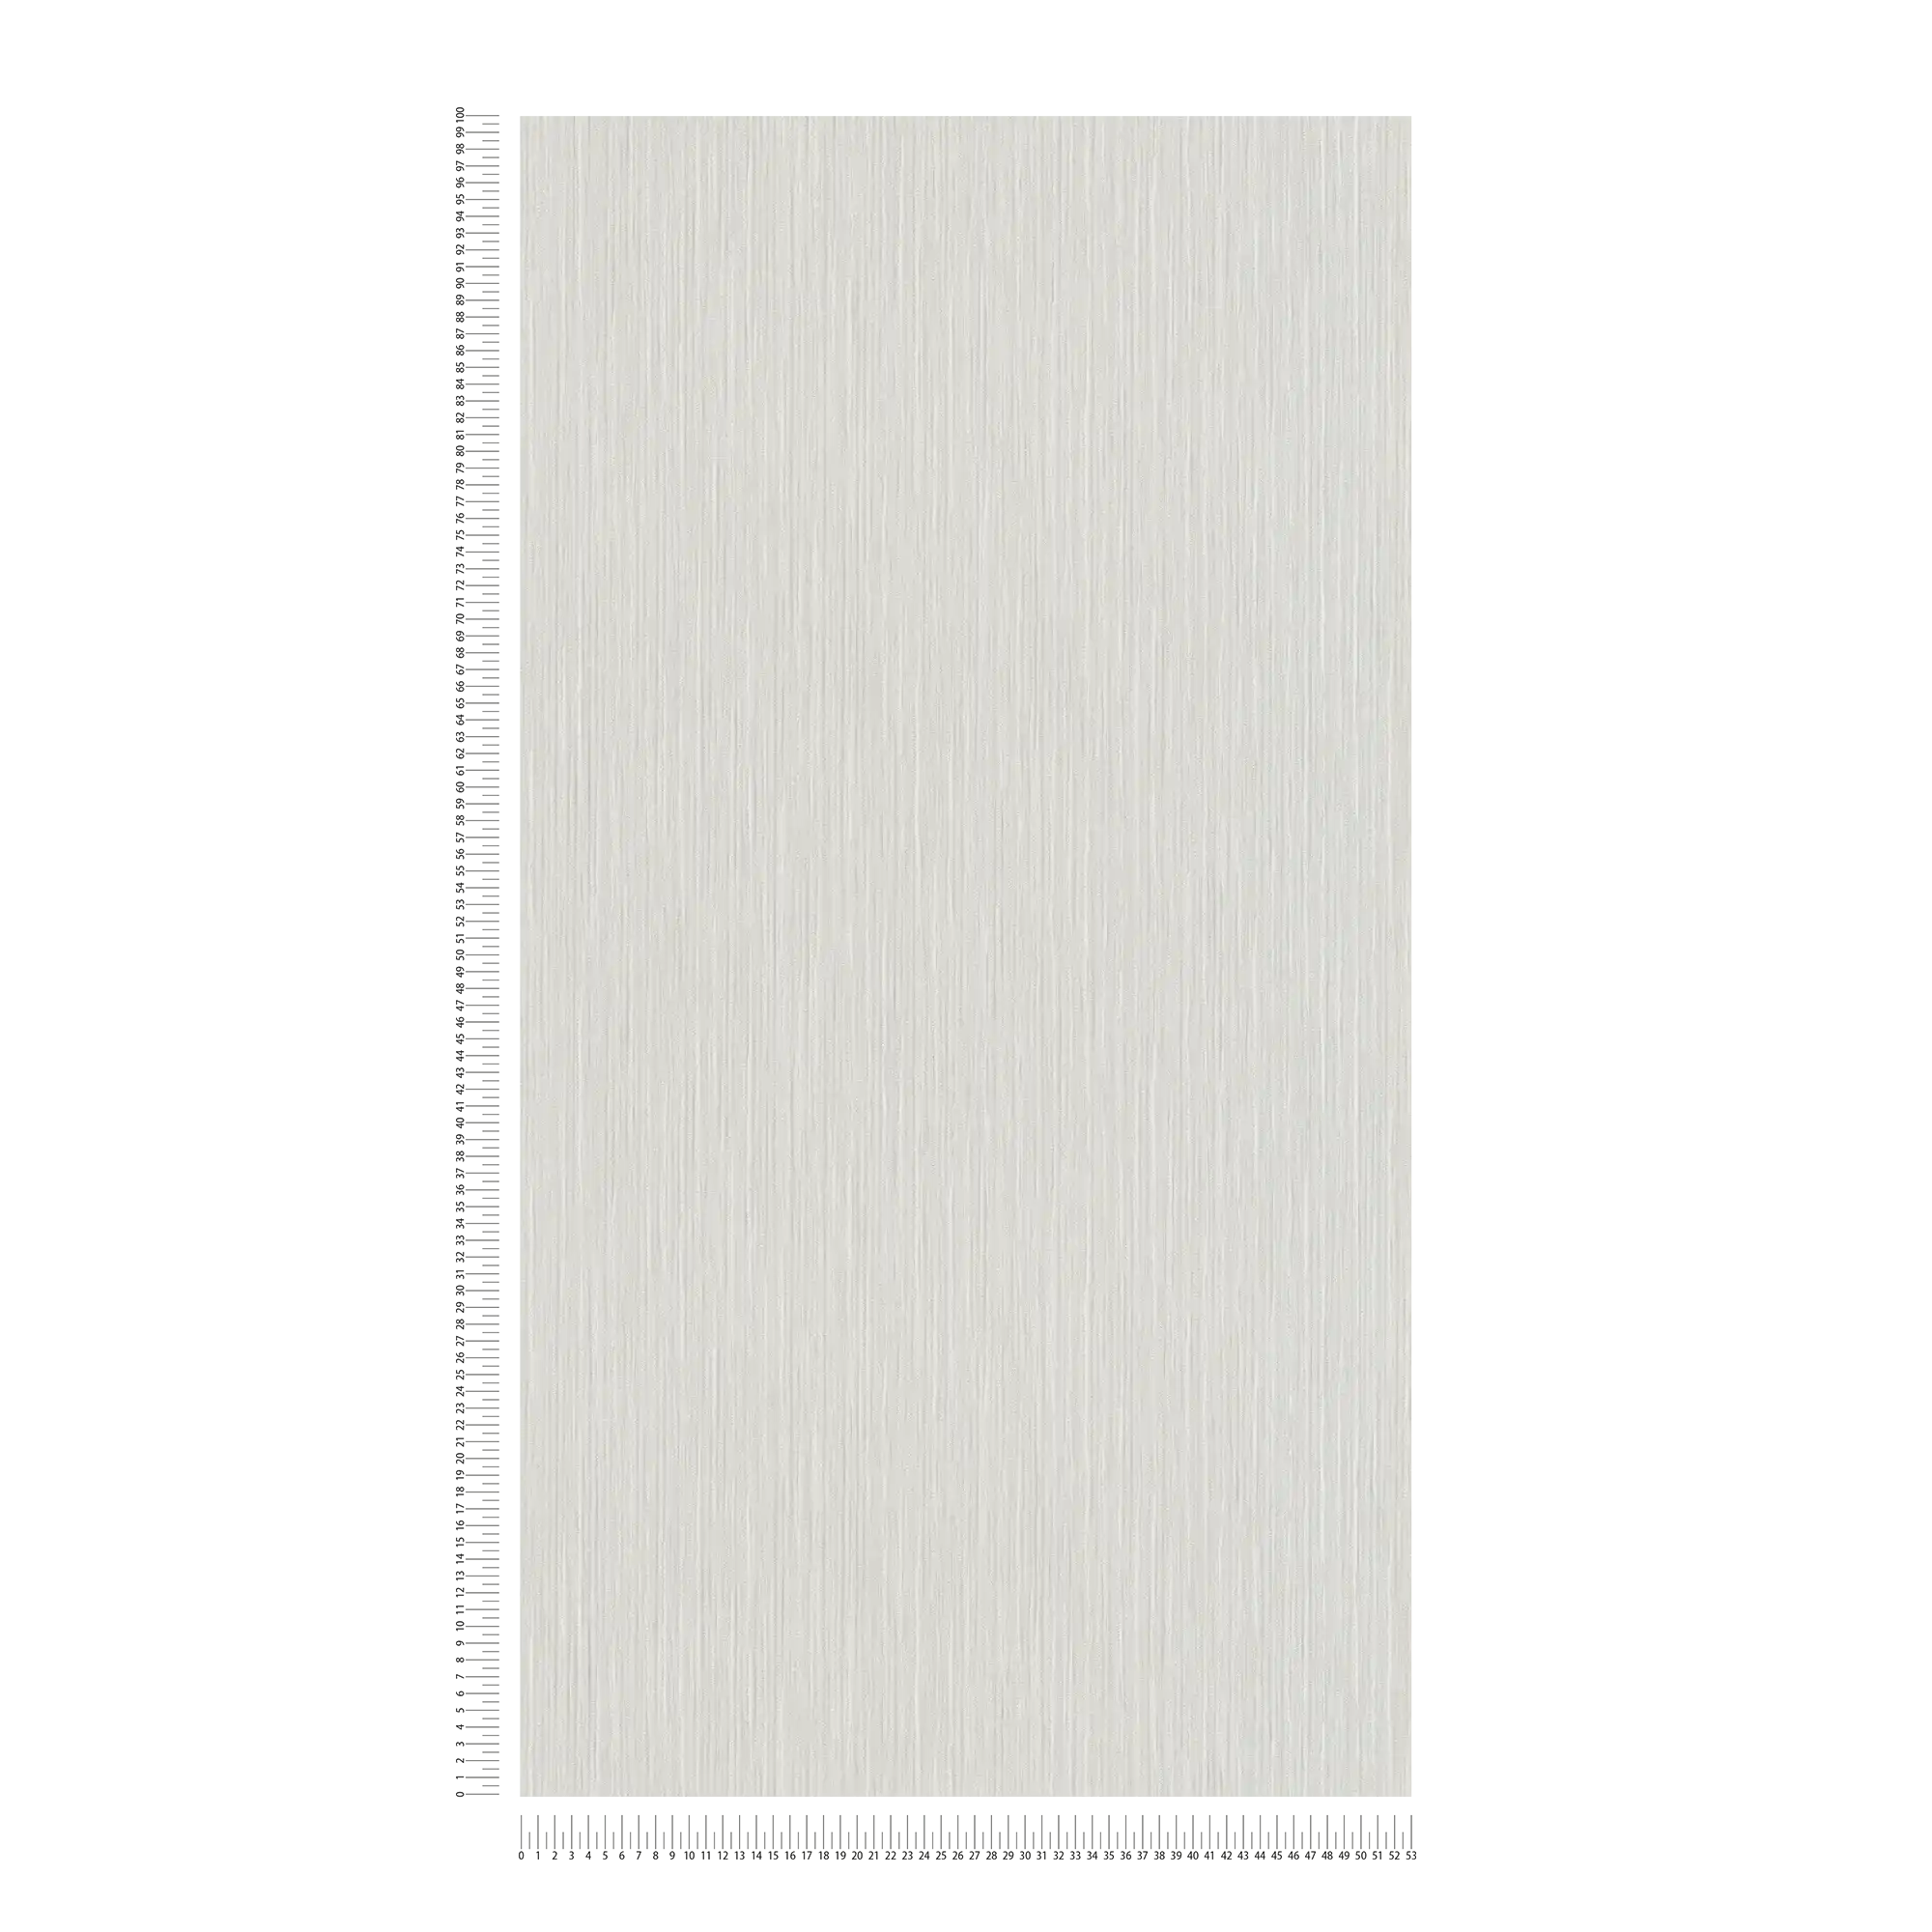             Papel pintado no tejido Melange gris claro metálico con efecto integral
        